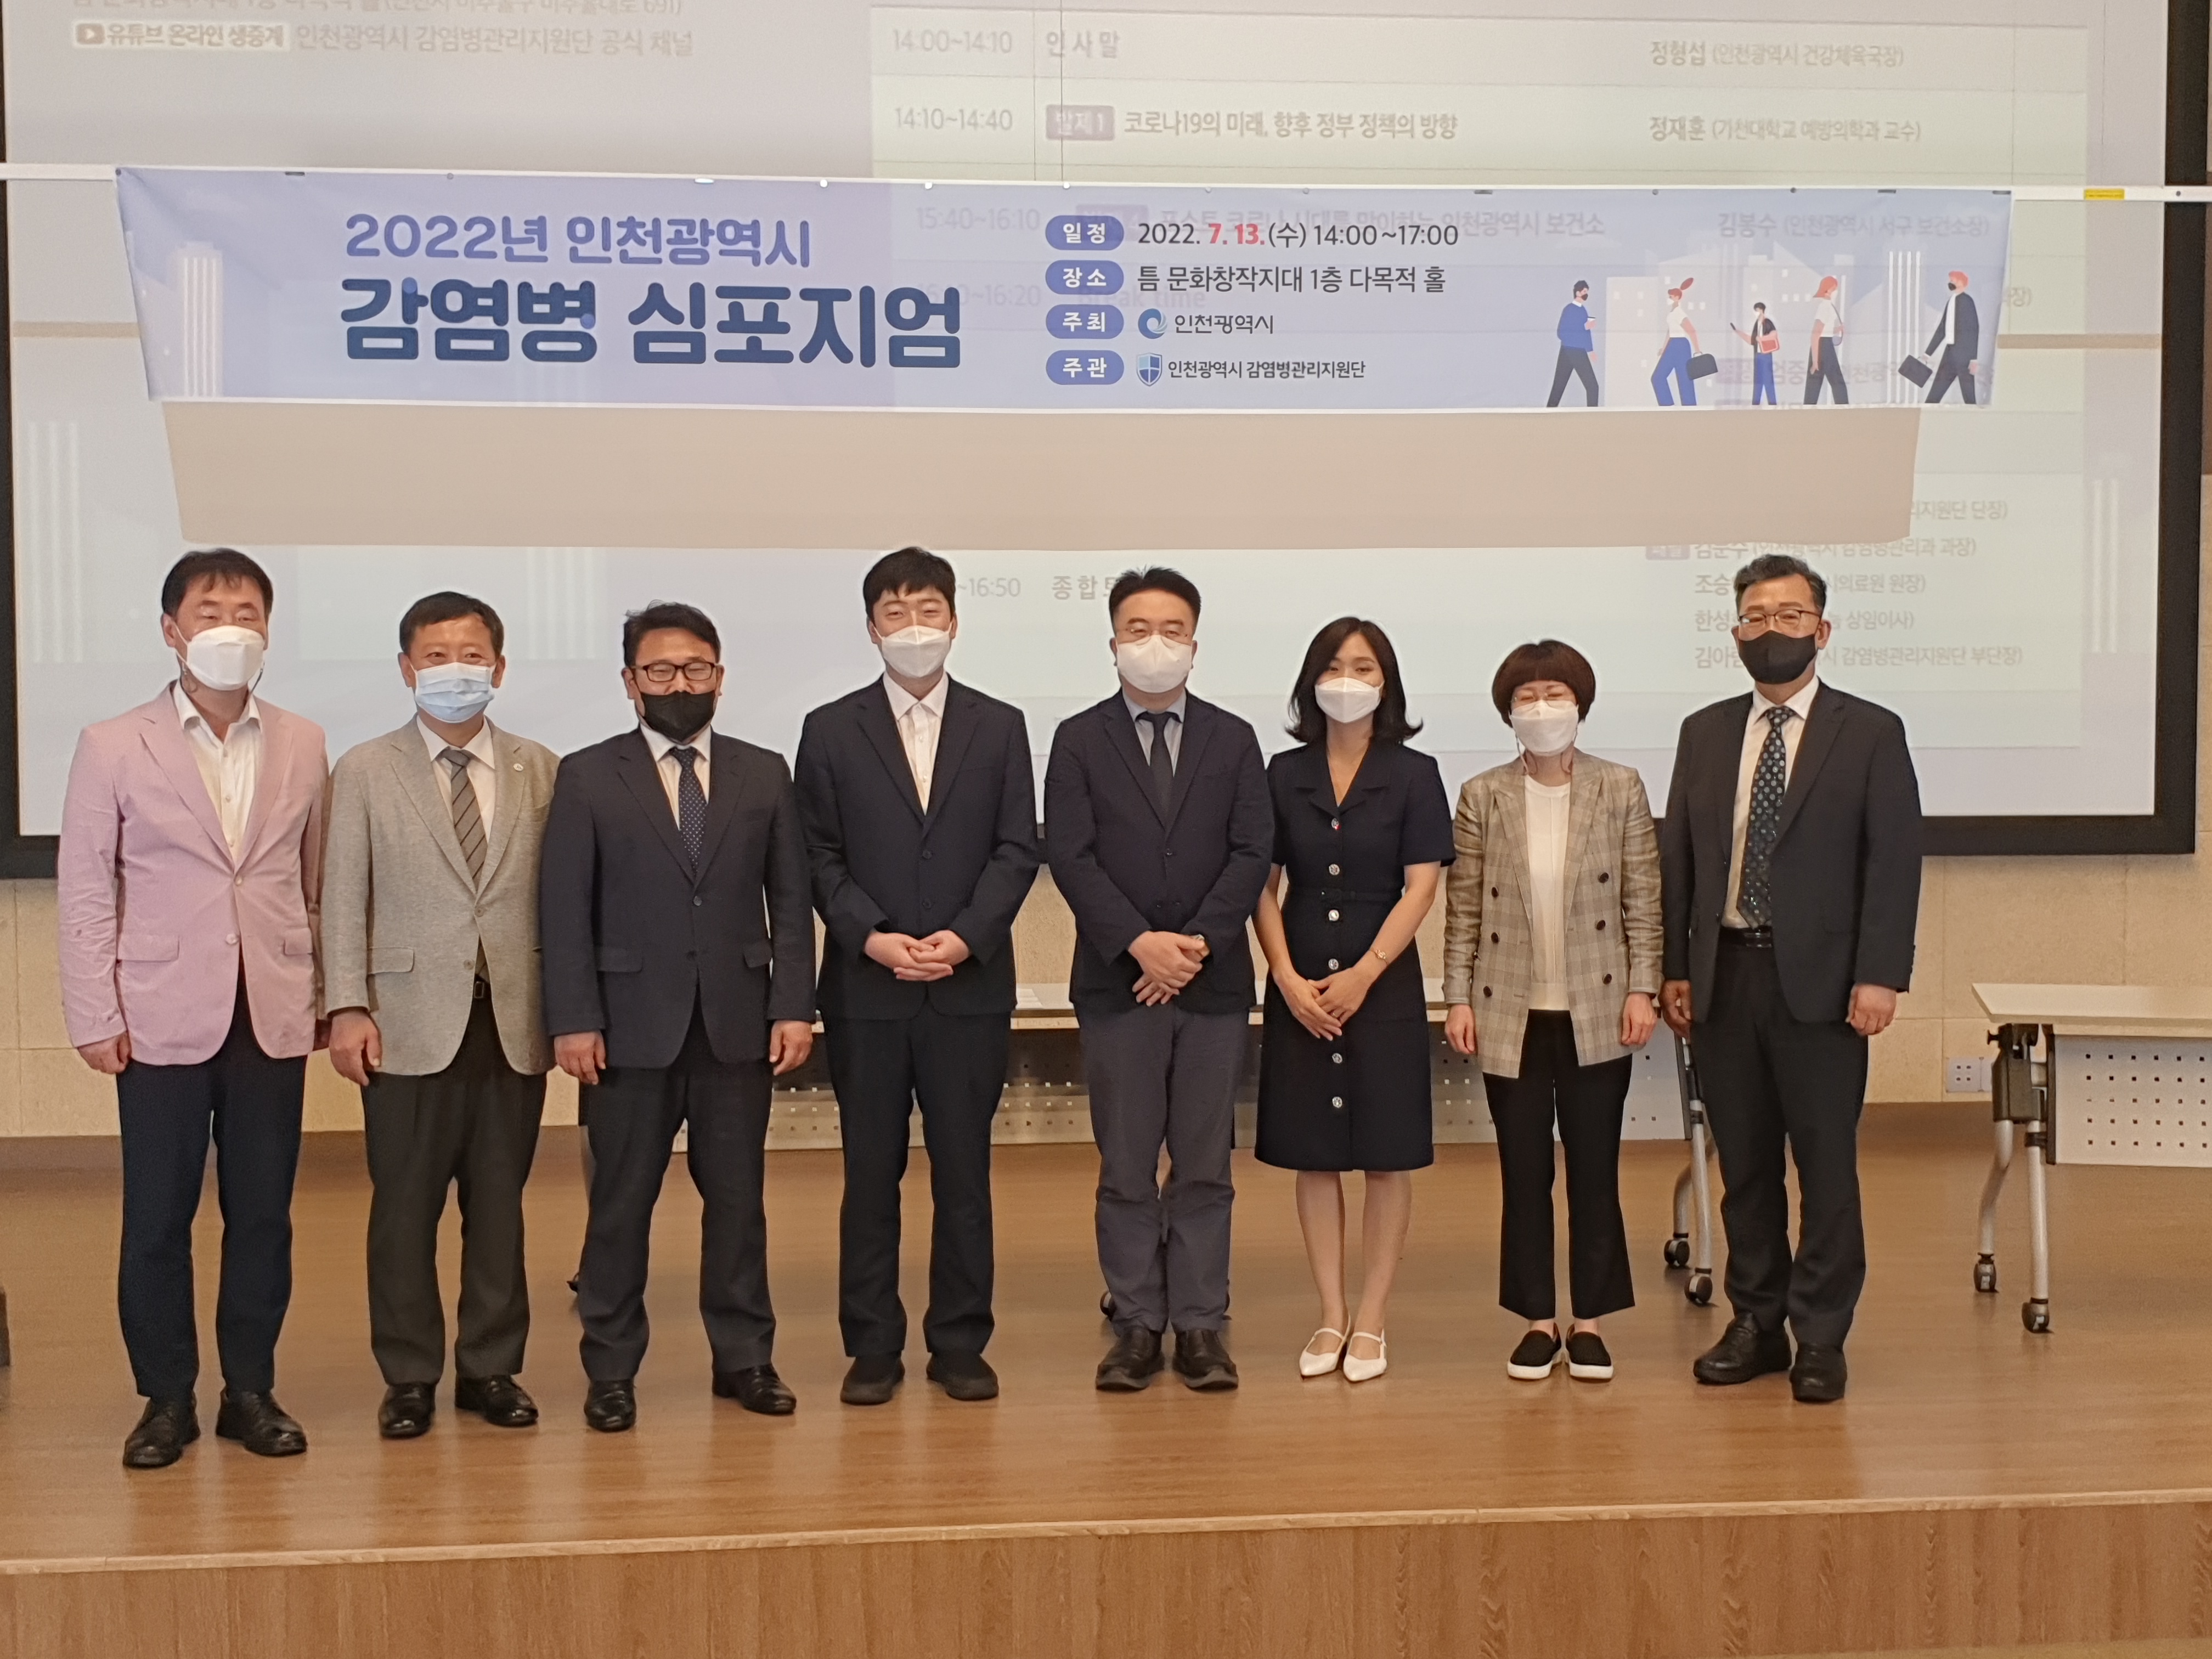 2022년 인천광역시 감염병 심포지엄